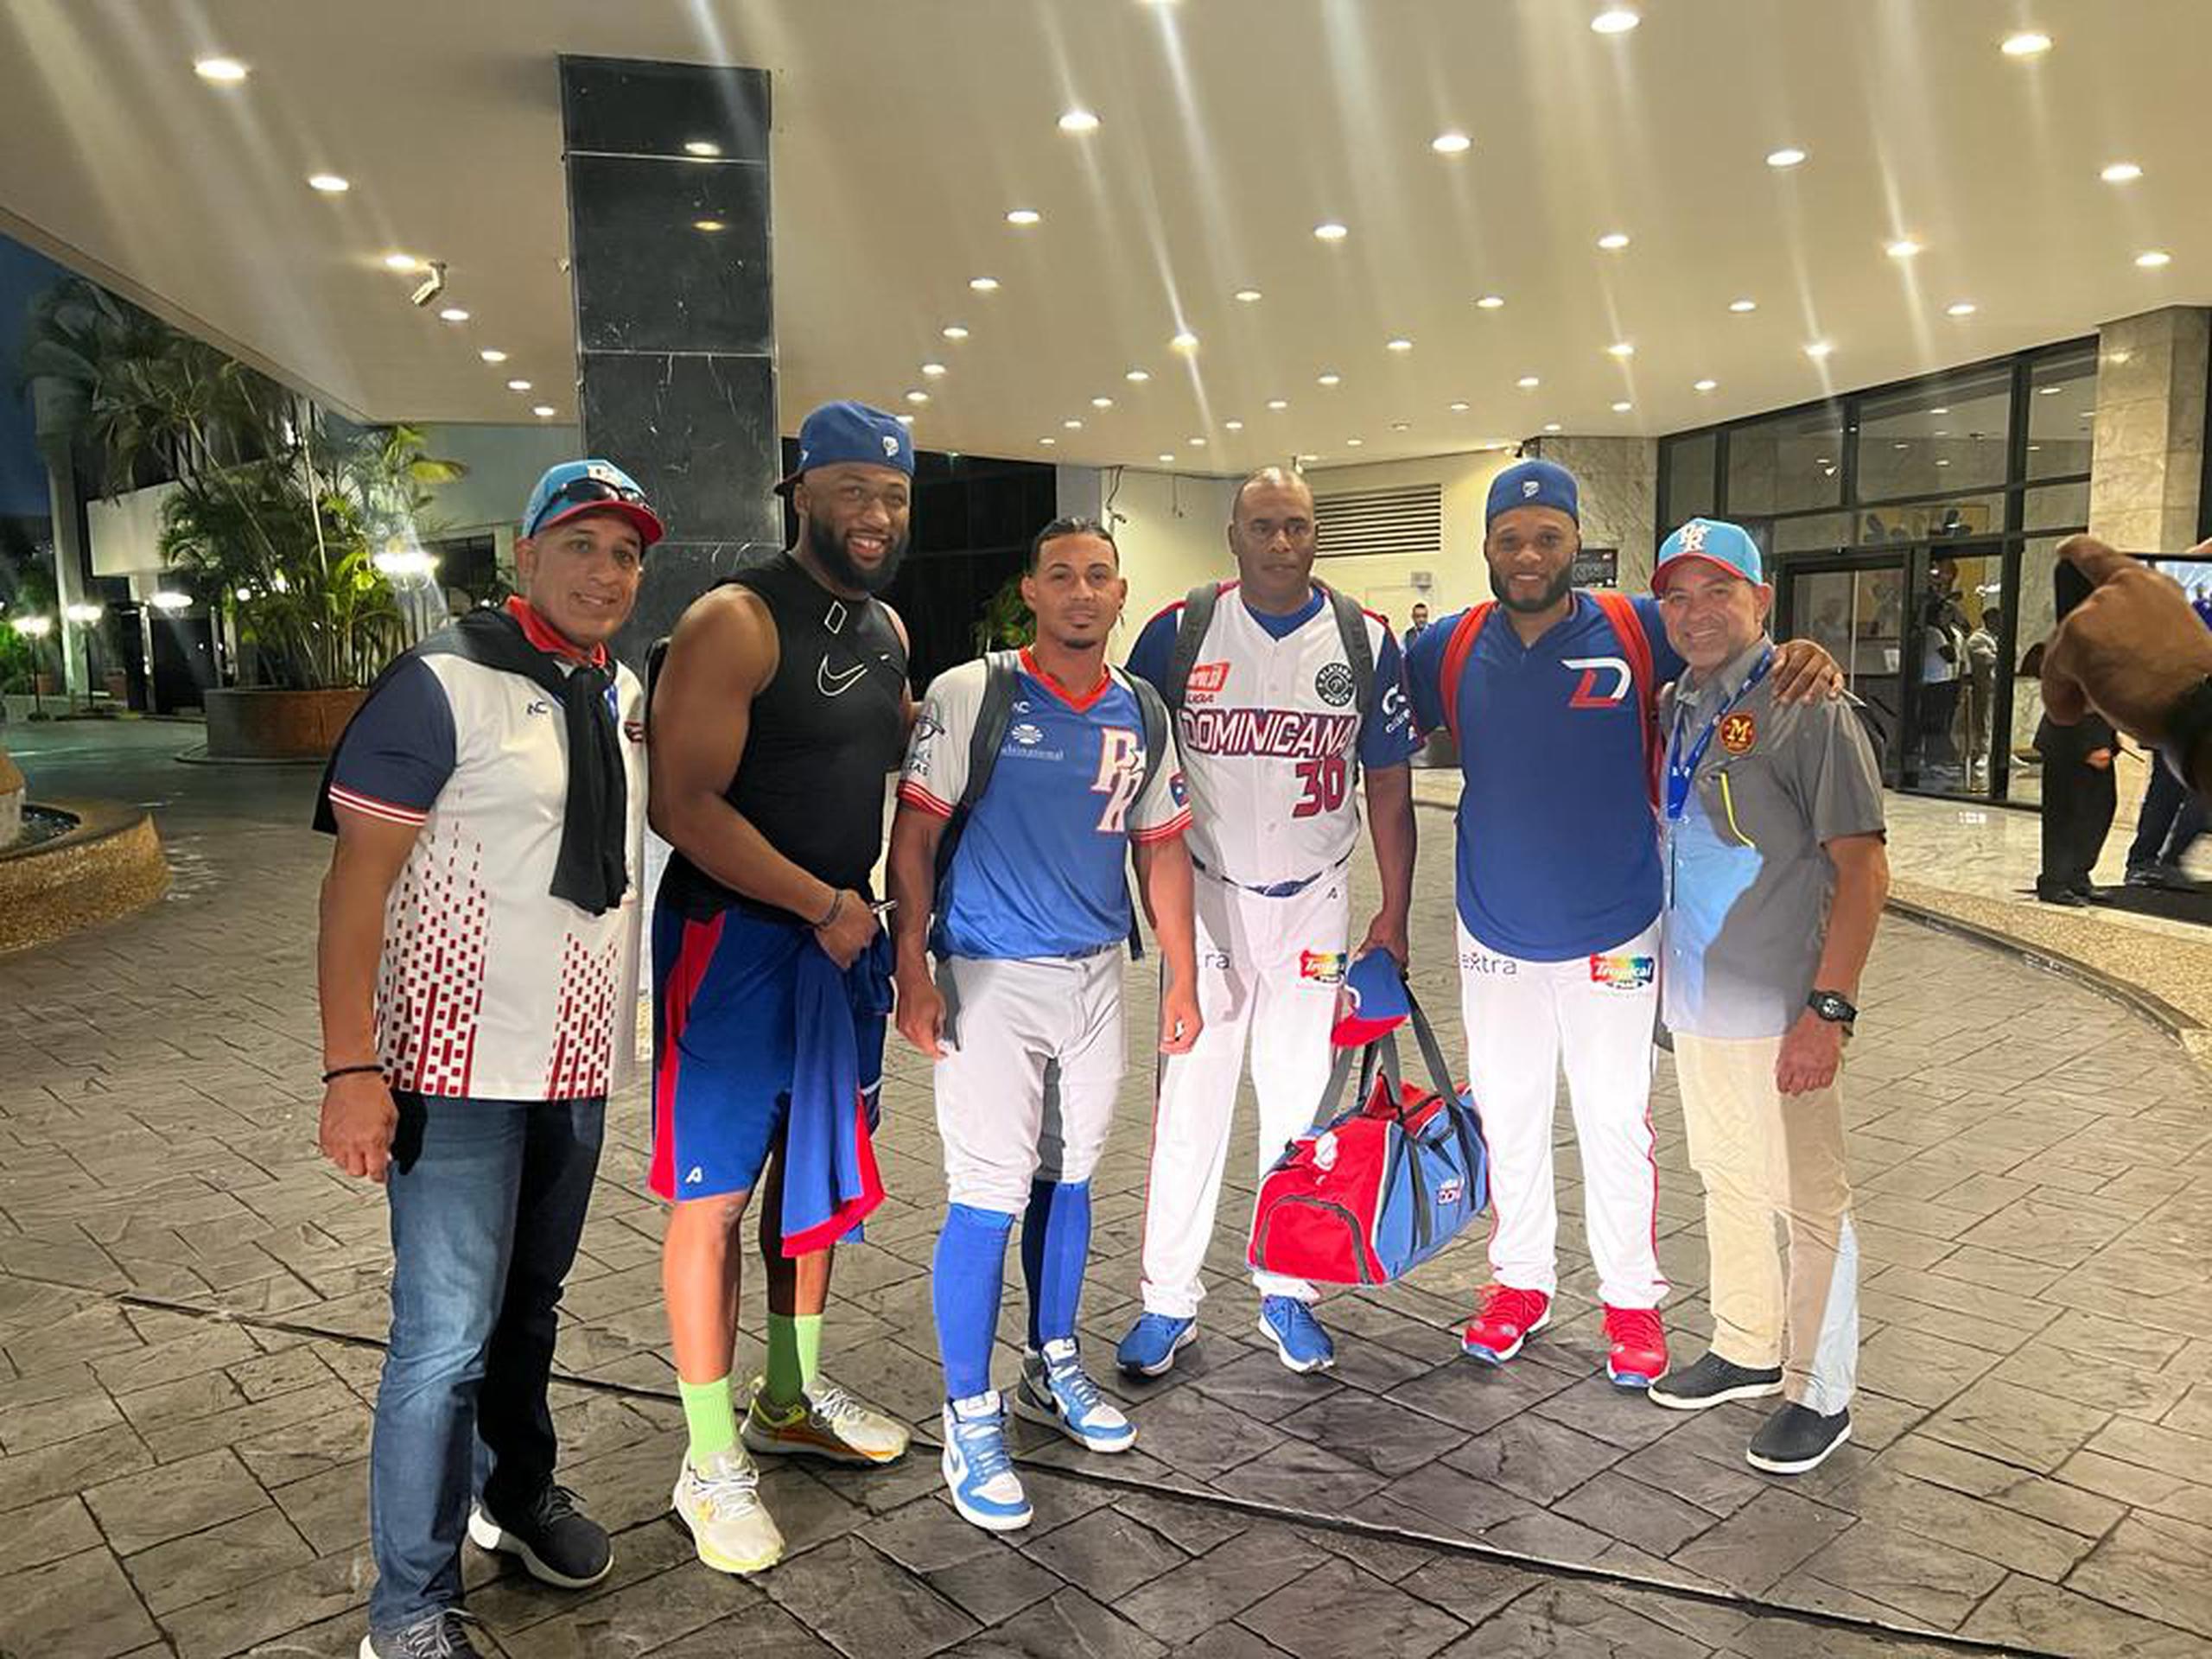 Tanto Luis Leroy Cruz, tercero desde la izquierda, como José Offerman, a su lado derecho, participaron en la conversación con otros integrantes del equipo dominicano a la llegada al hotel que comparten.